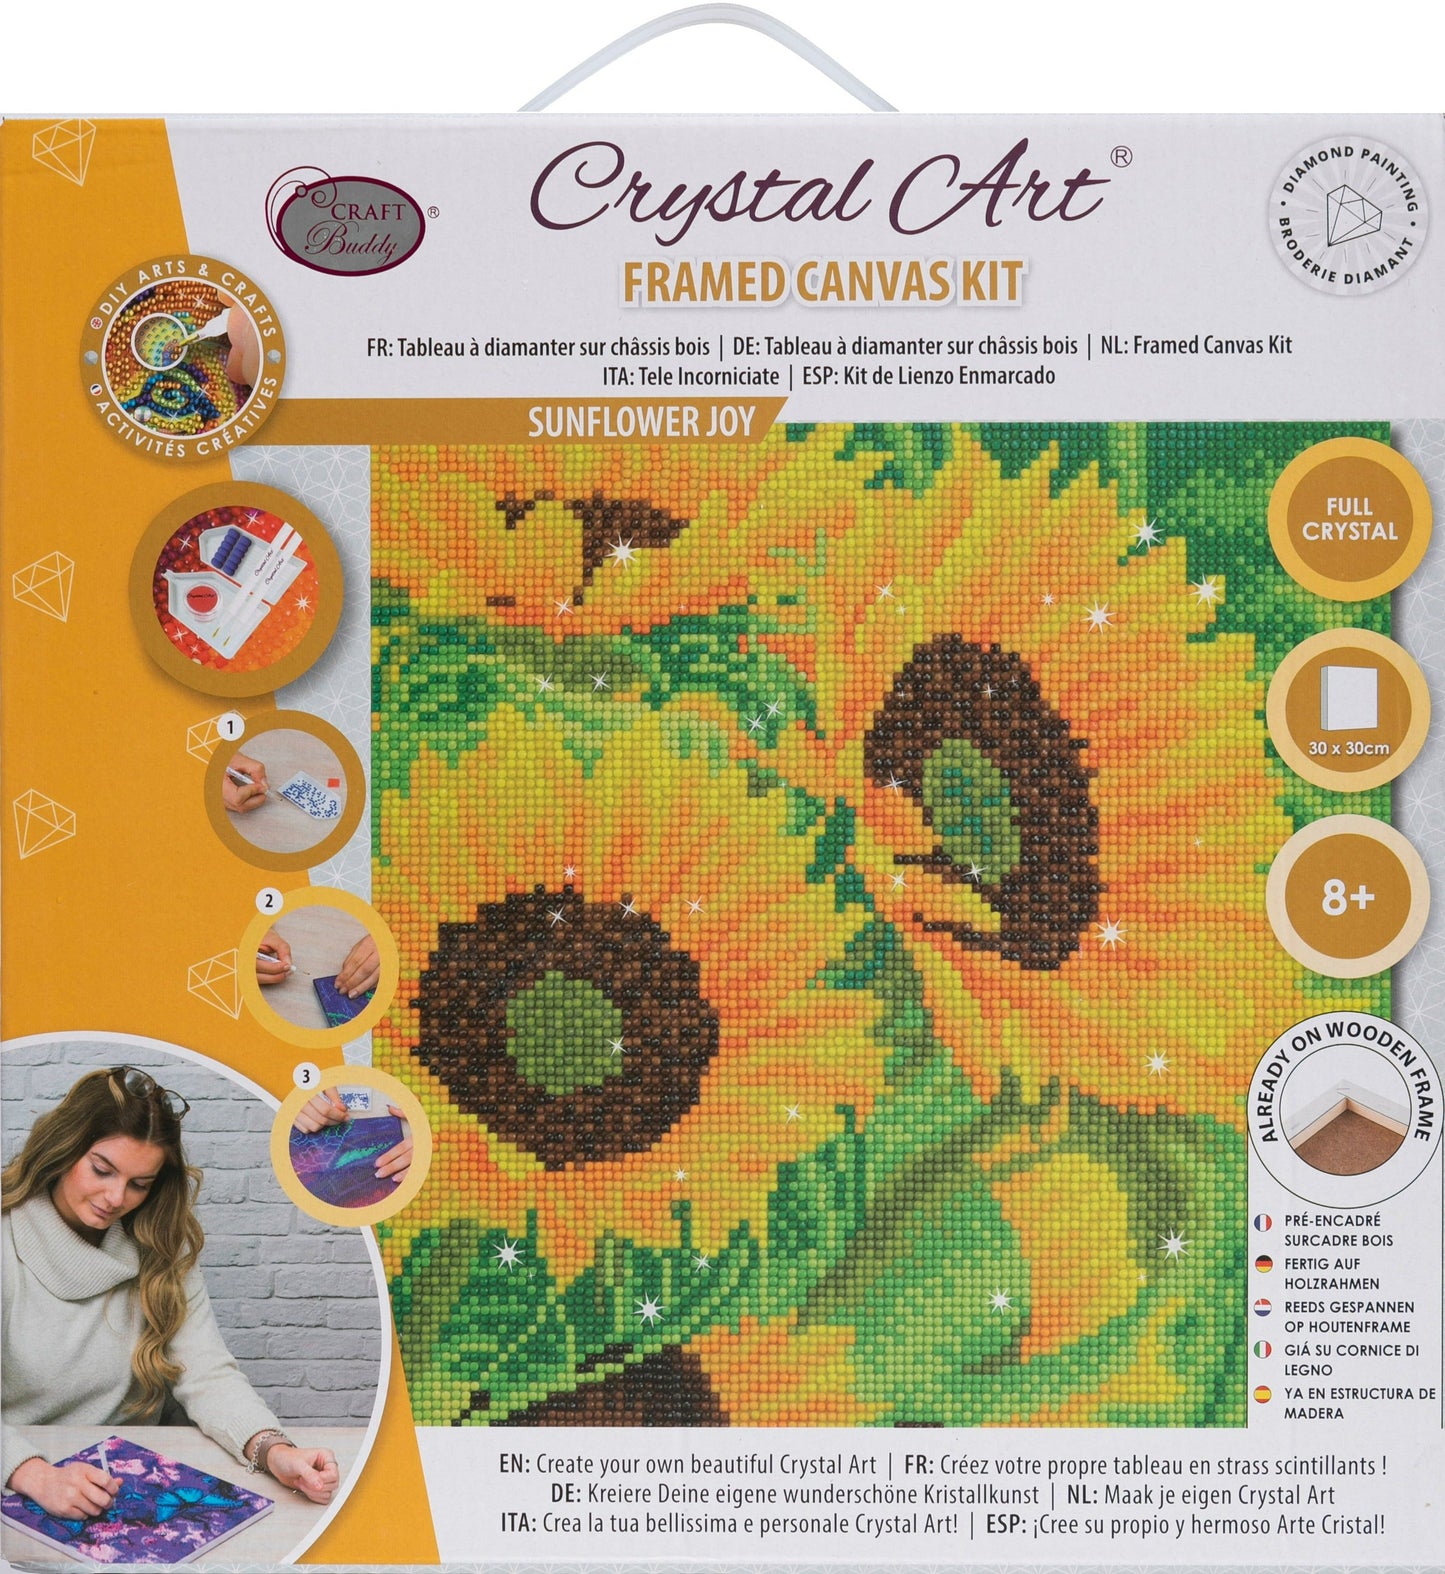 Sunflower Joy 30x30cm Crystal Art Kit - Front Packaging